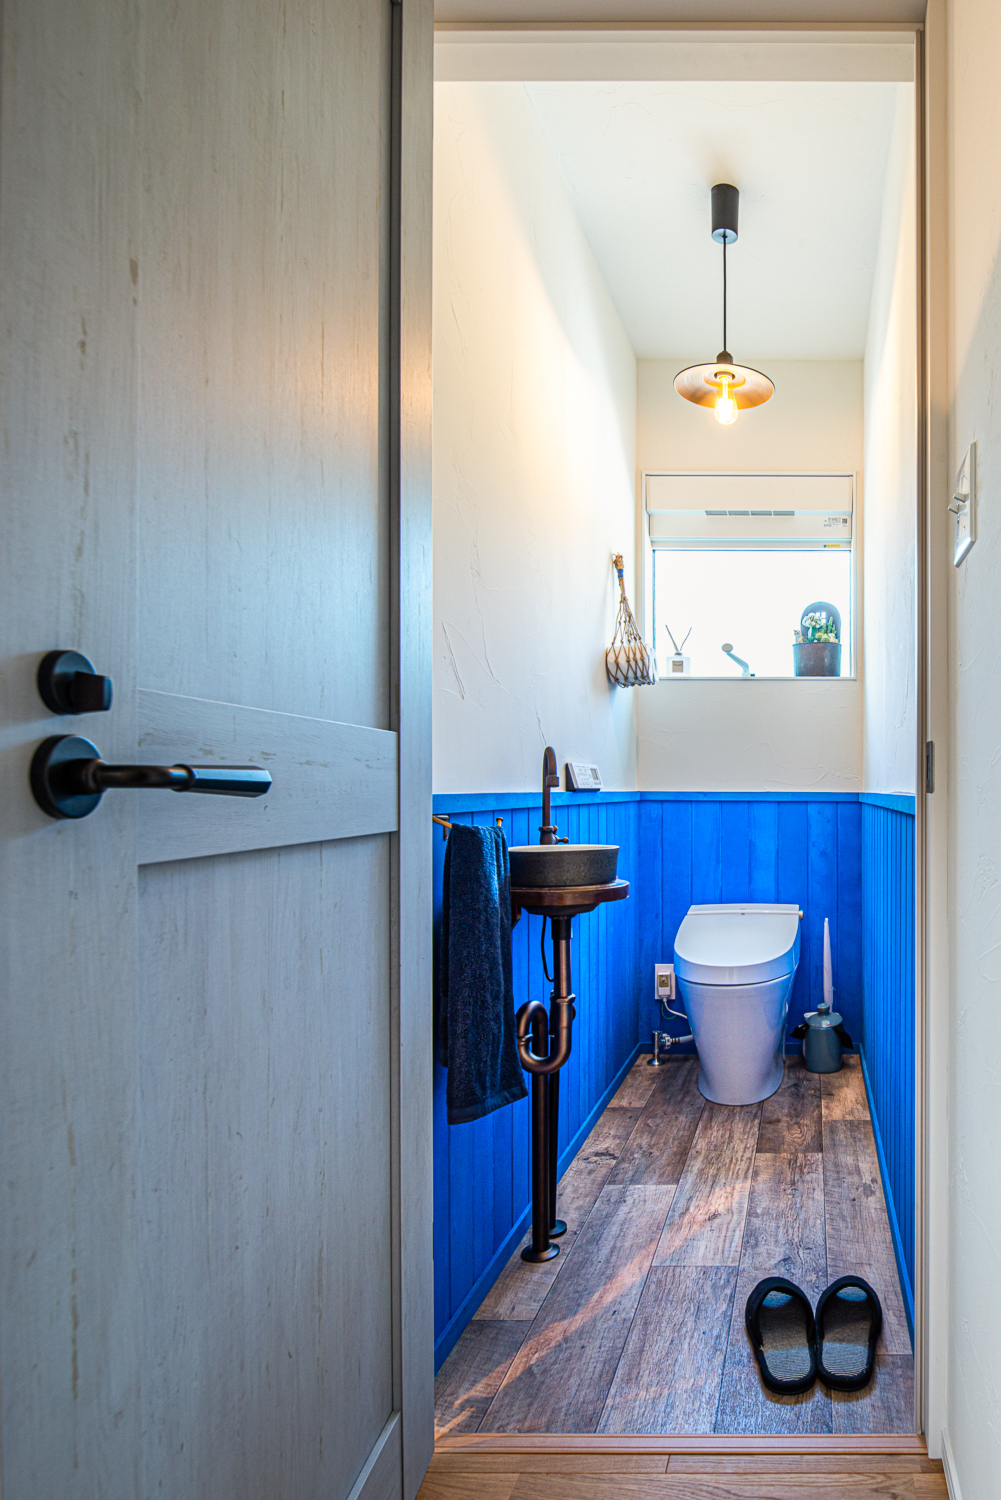 トイレの壁の配色にもこだわり、手洗い器もレトロな雰囲気のものを選択